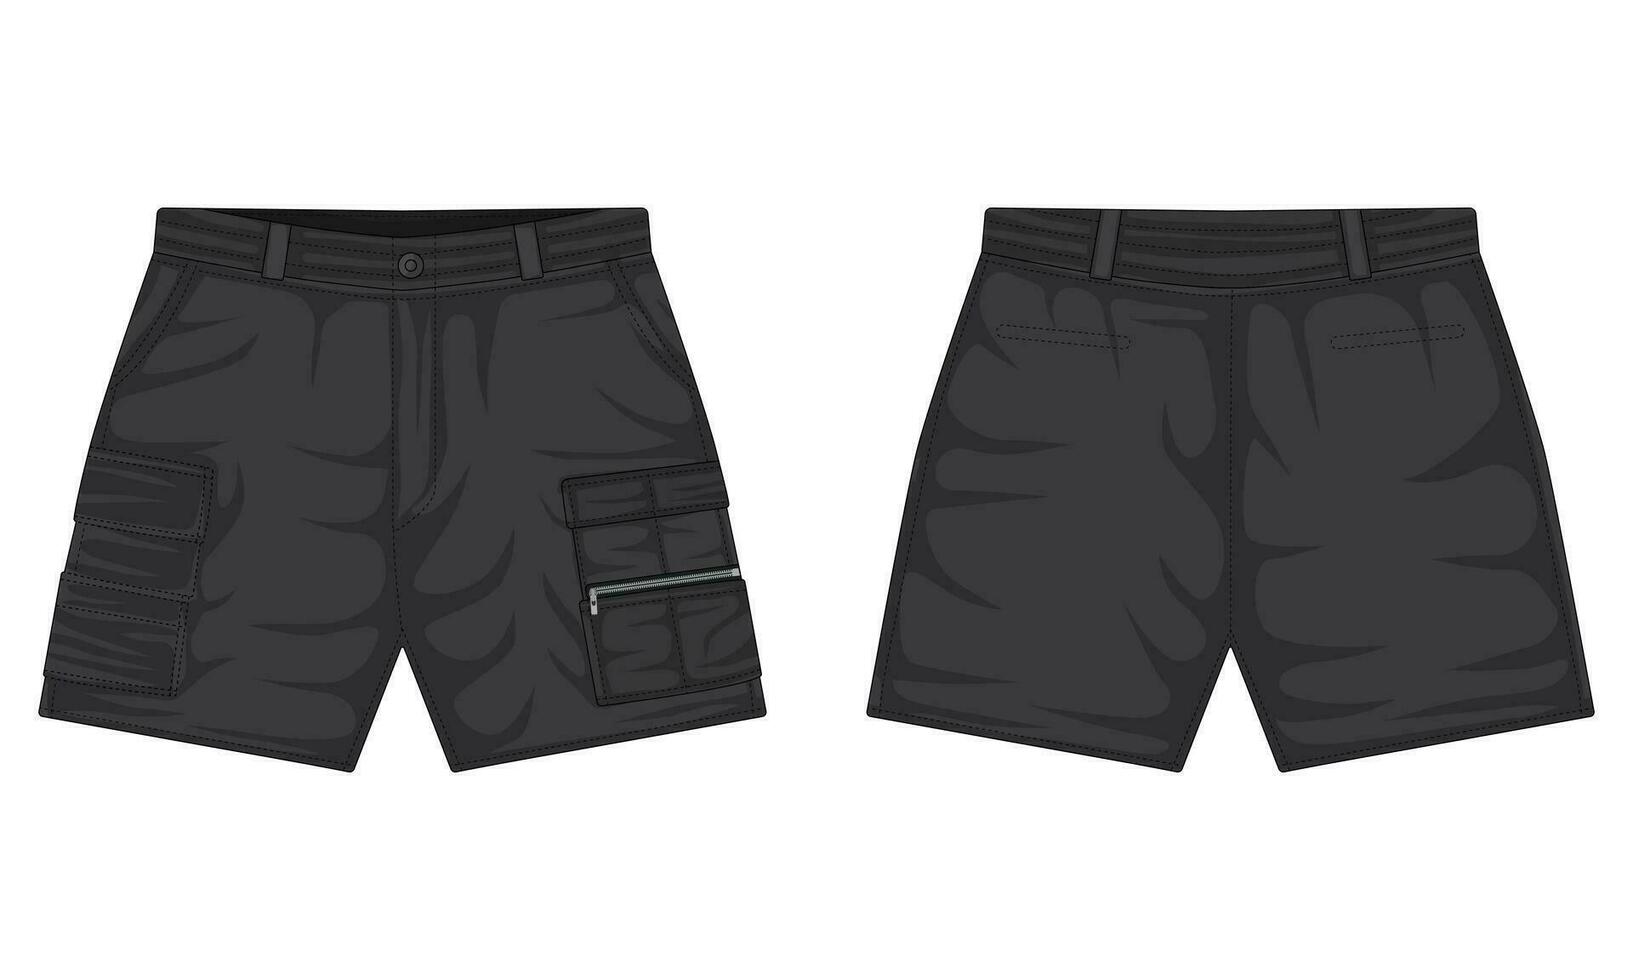 zwart buitenshuis shorts sjabloon voorkant en terug visie vector